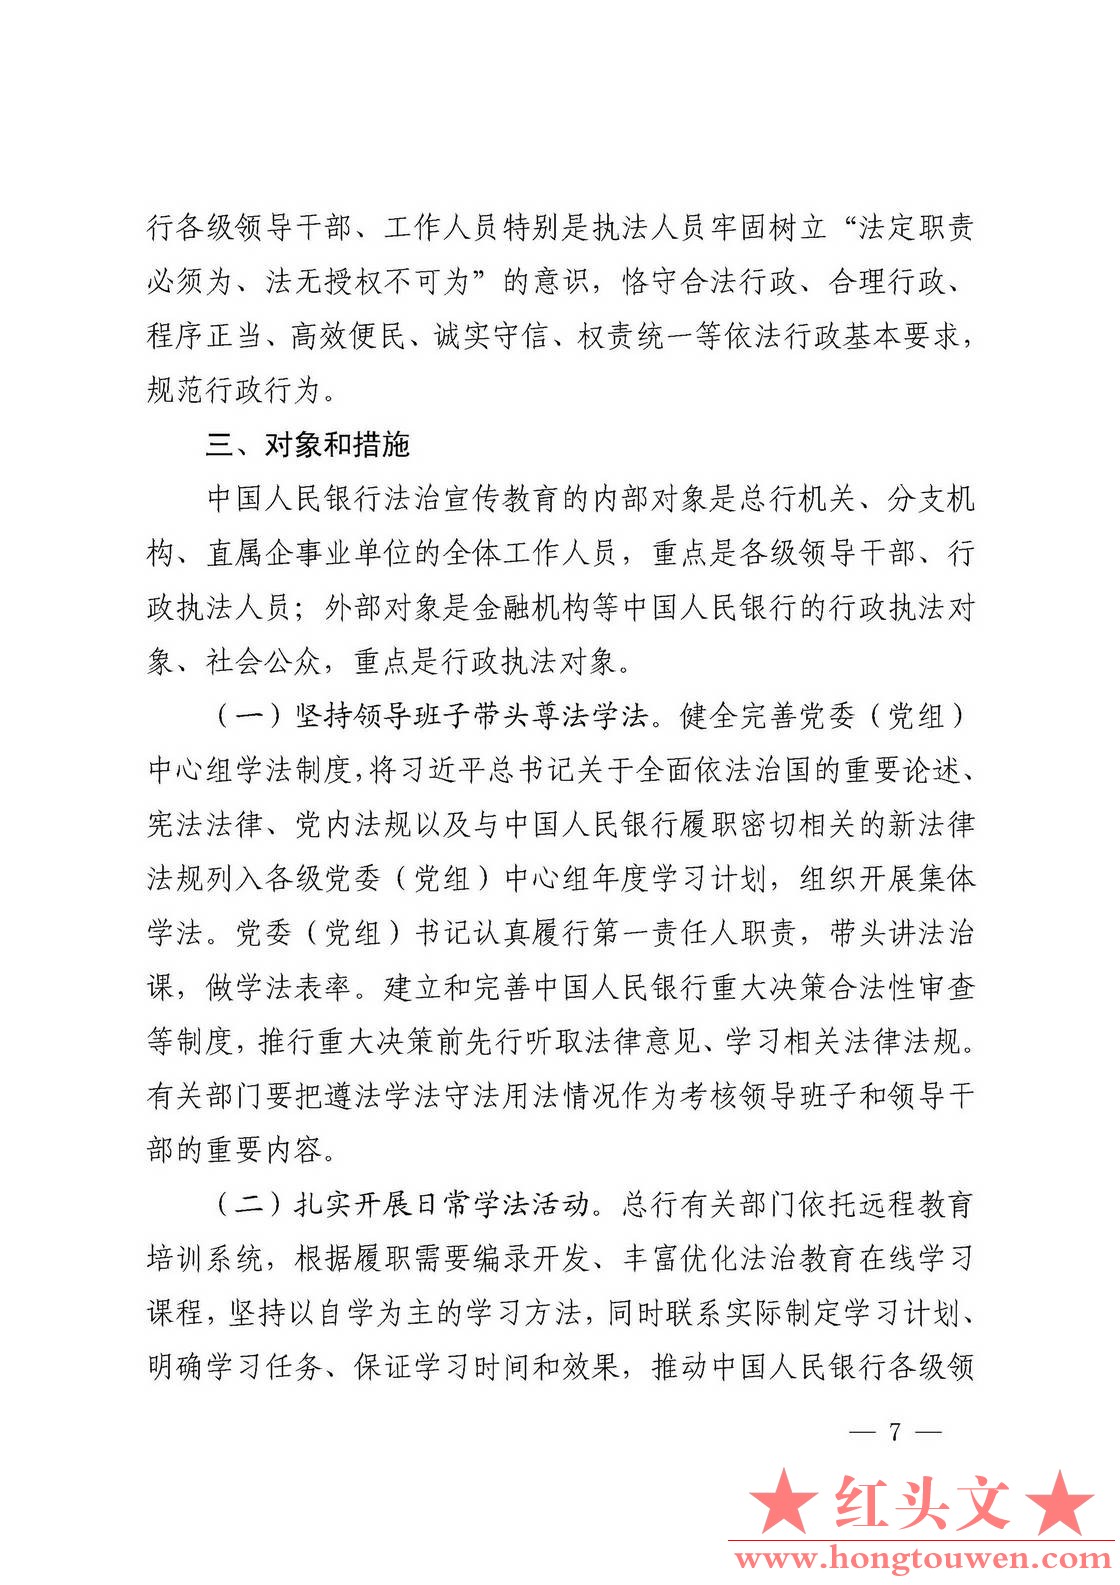 银发[2016]308号-中国人民银行关于印发《中国人民银行法制宣传教育第七个五年规划》的.jpg